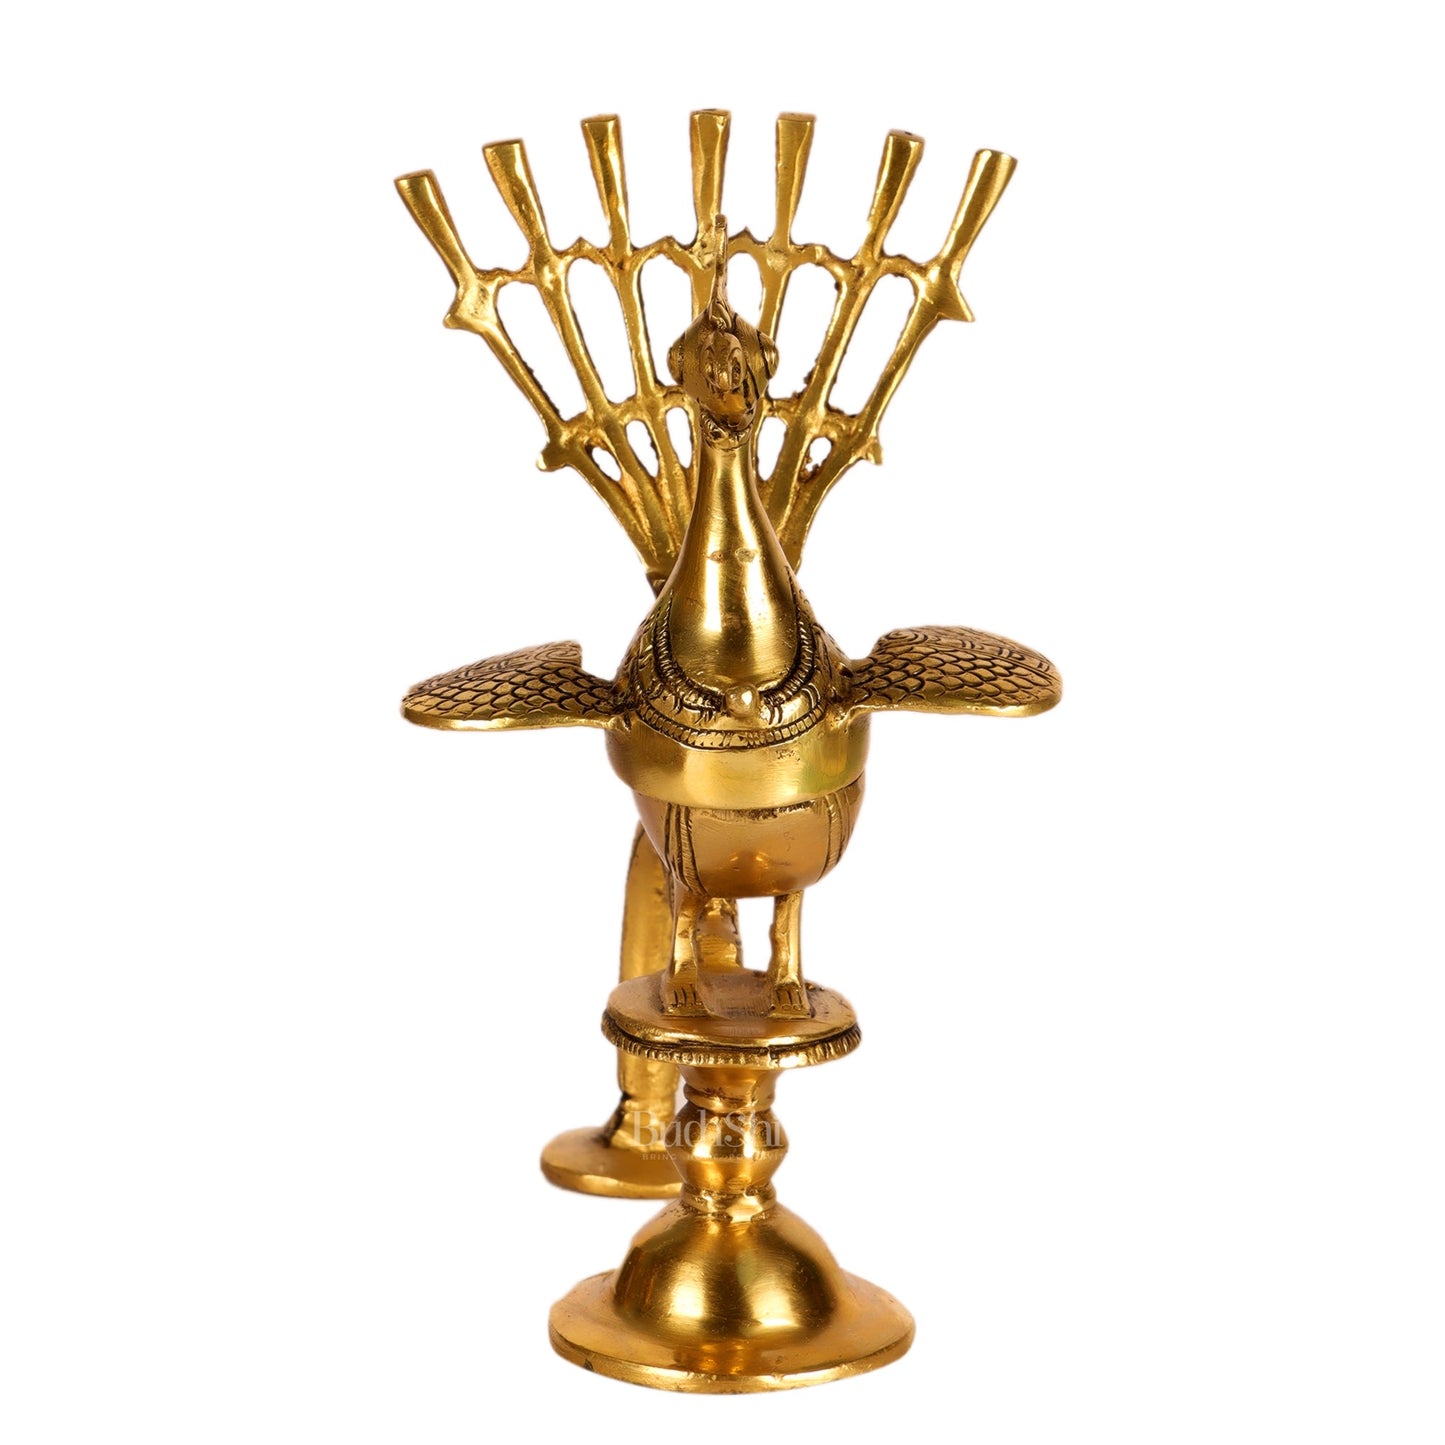 Brass peacock dhoop burner/ dhoop daani burner 8" - Budhshiv.com